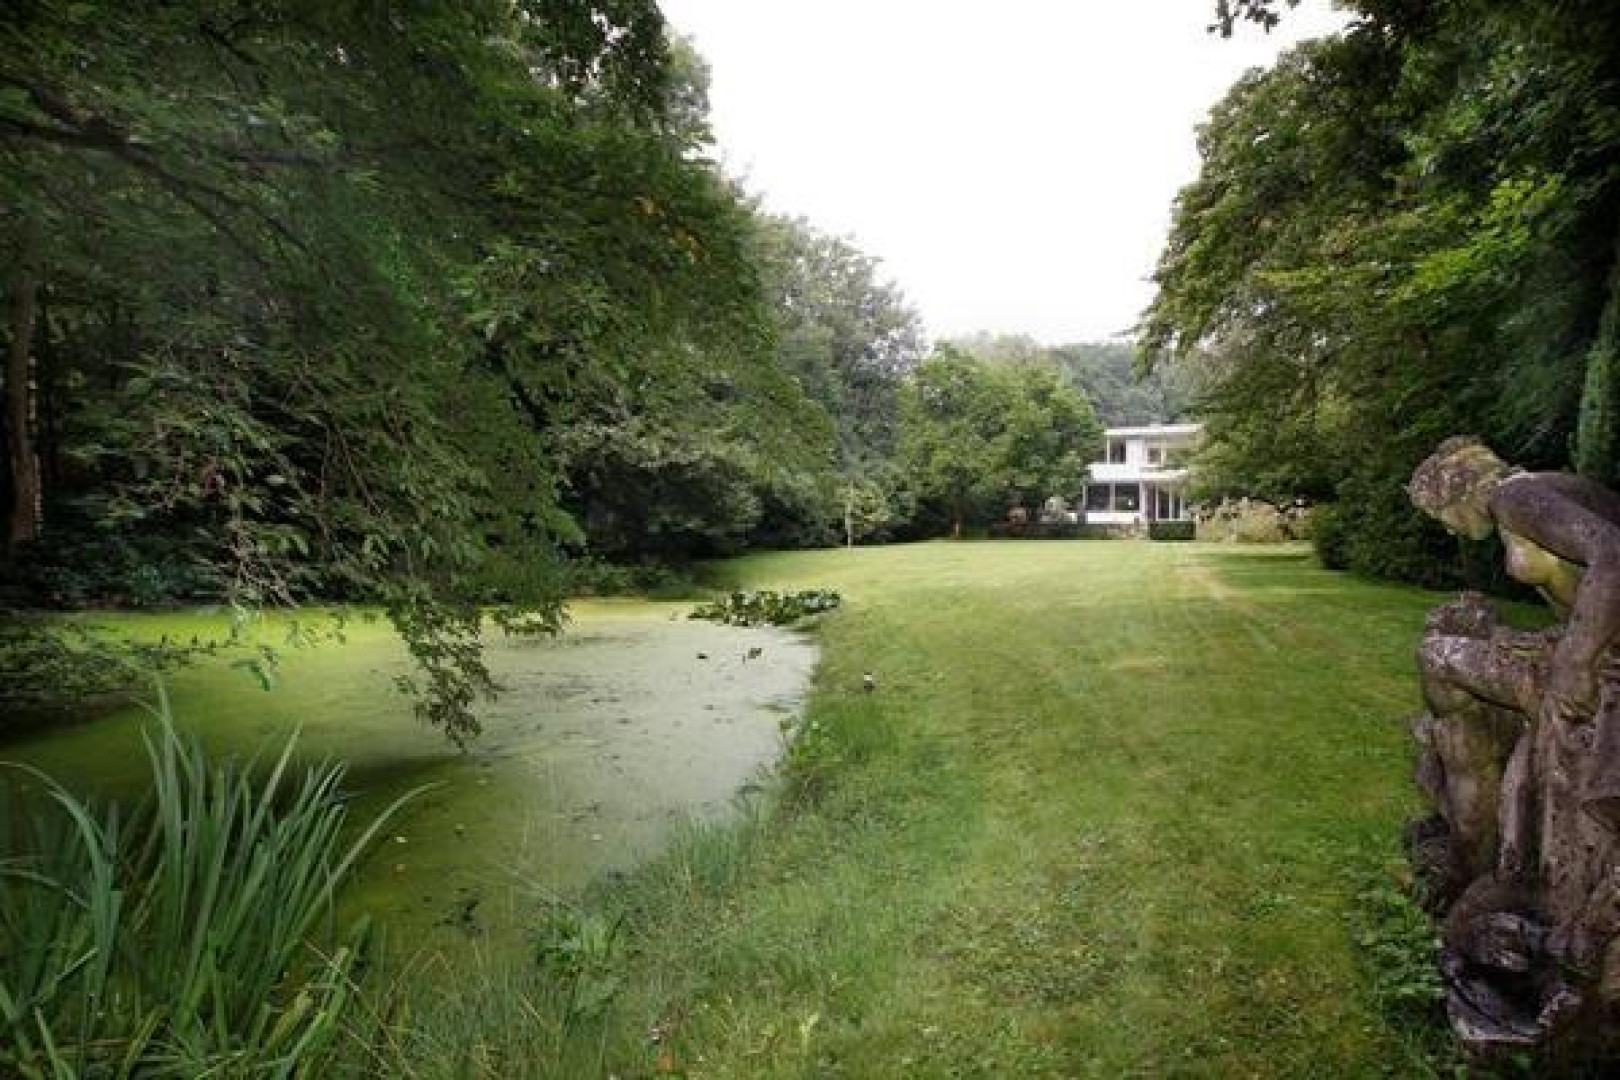 Totale prijsverlaging van half miljoen euro moet koper lokken voor villa Neelie Smit Kroes. Zie foto's! 1